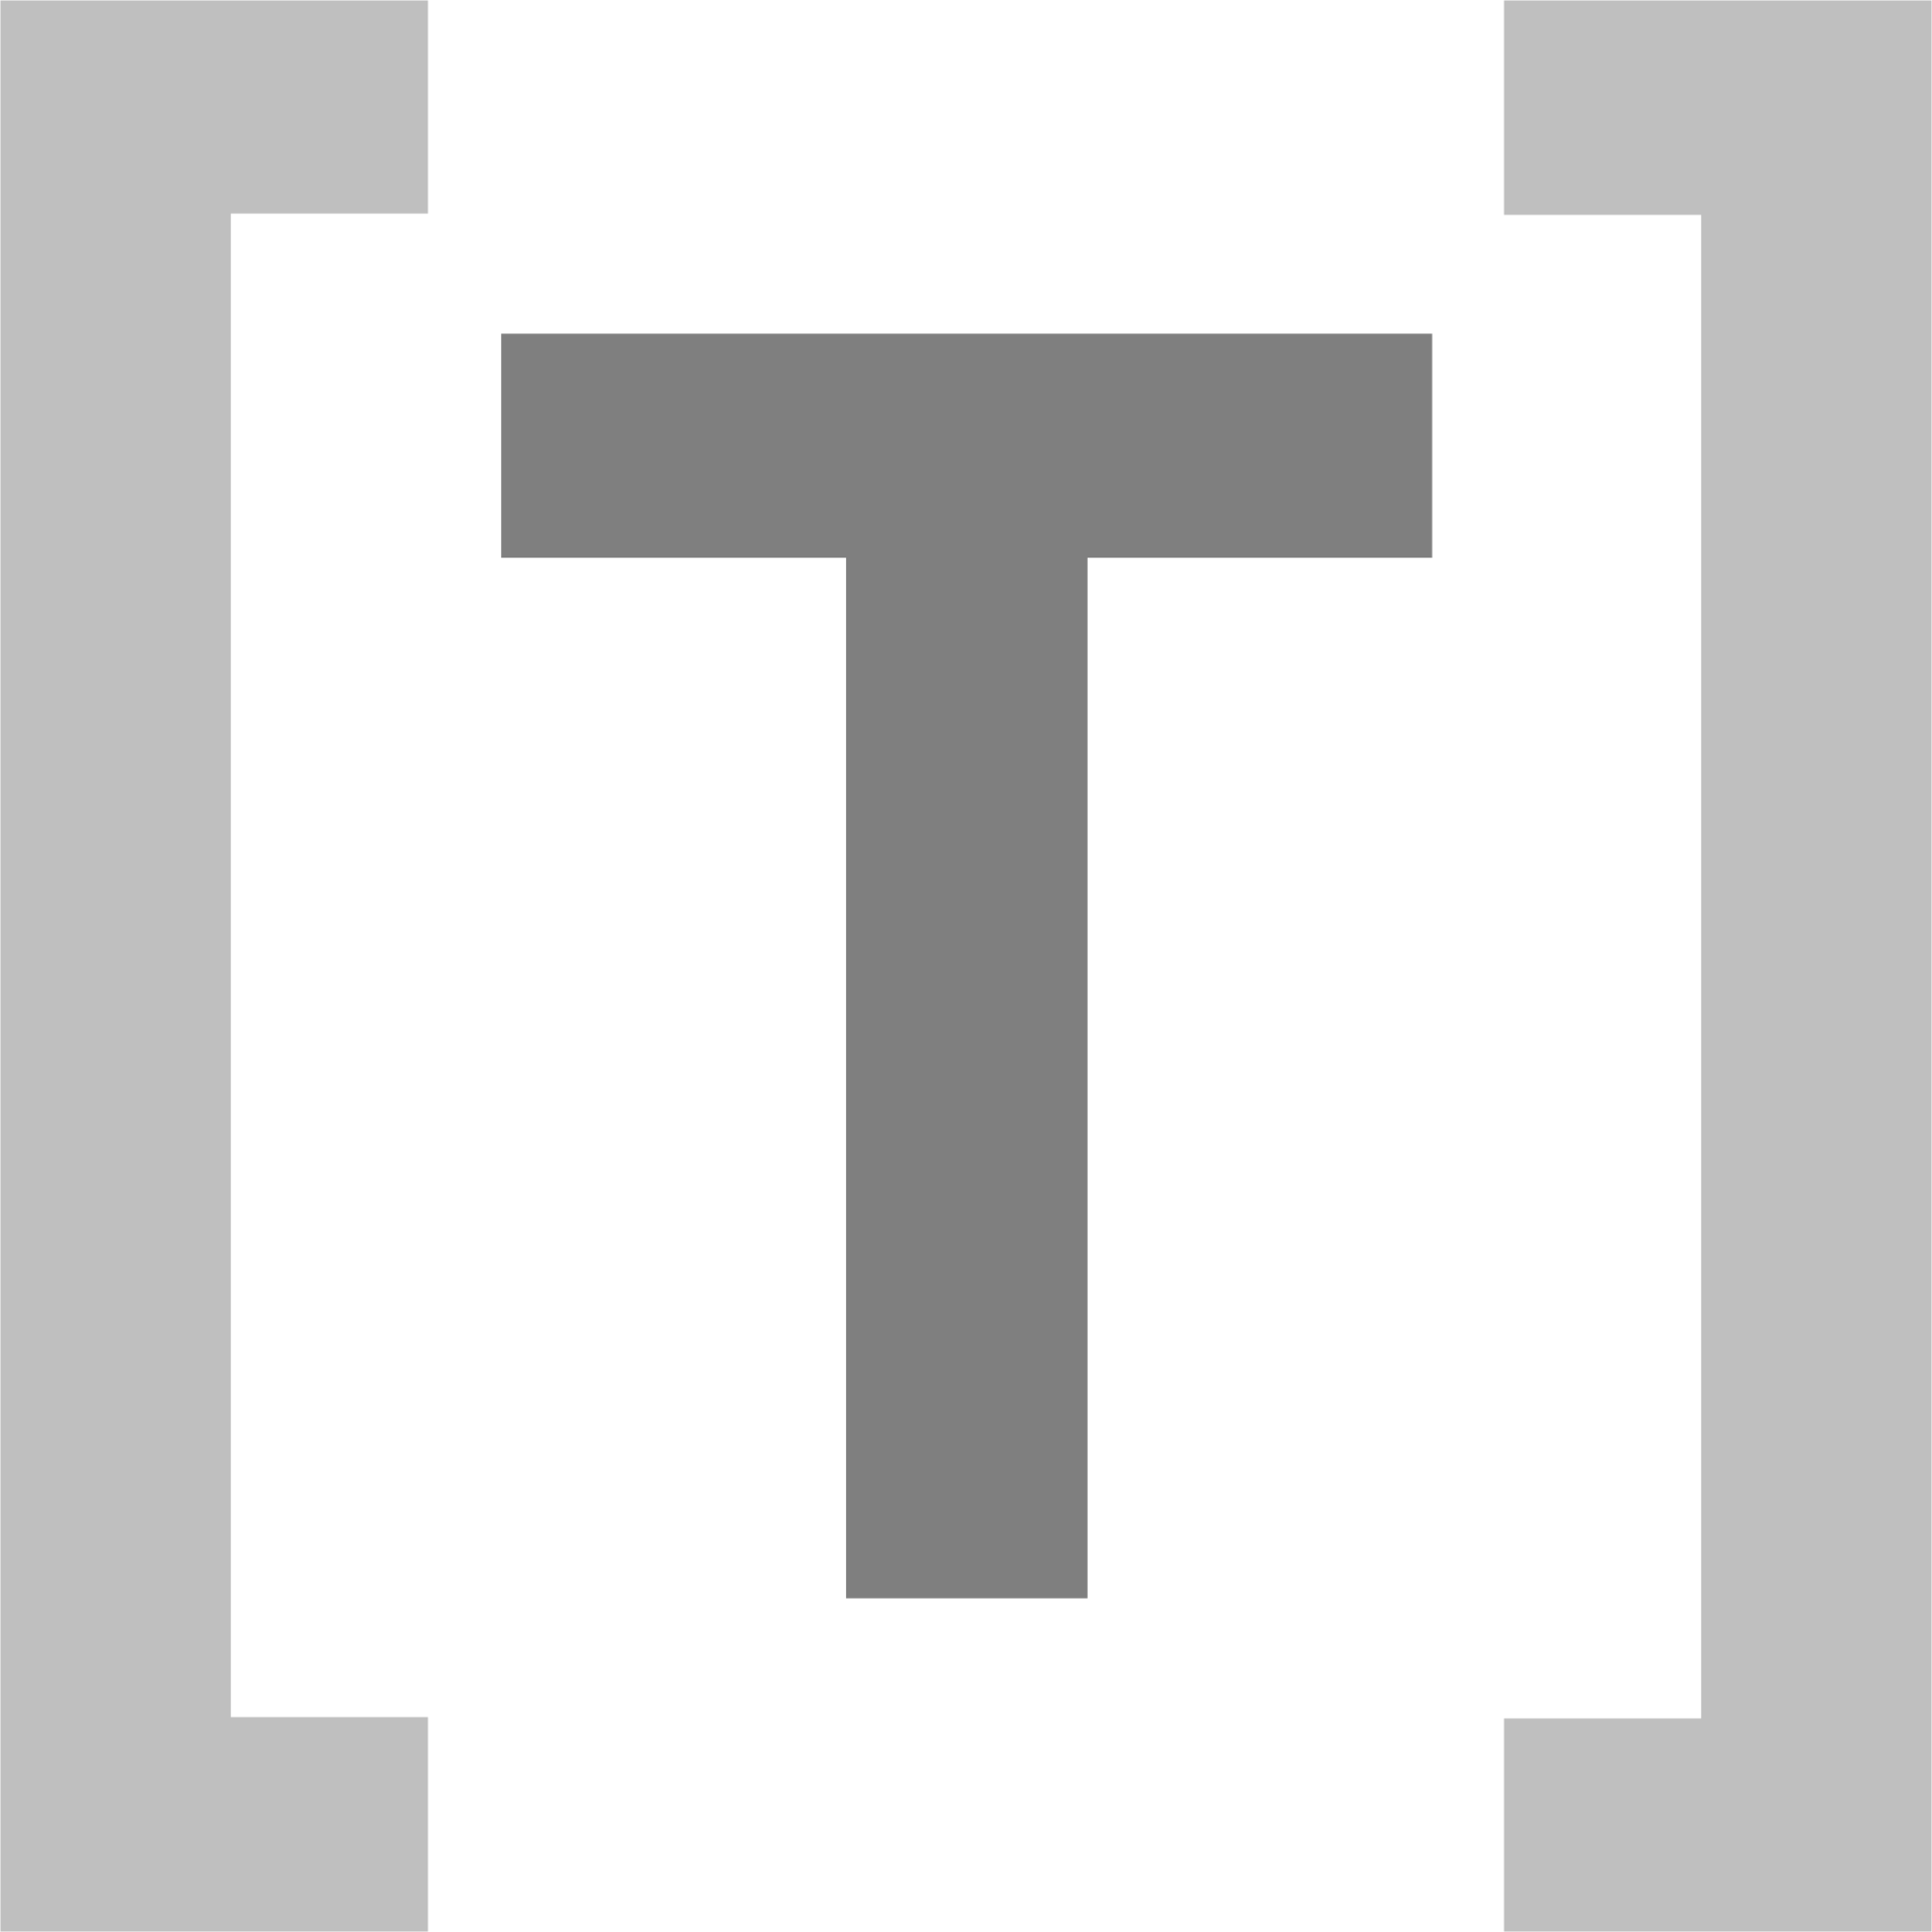 file type toml icon